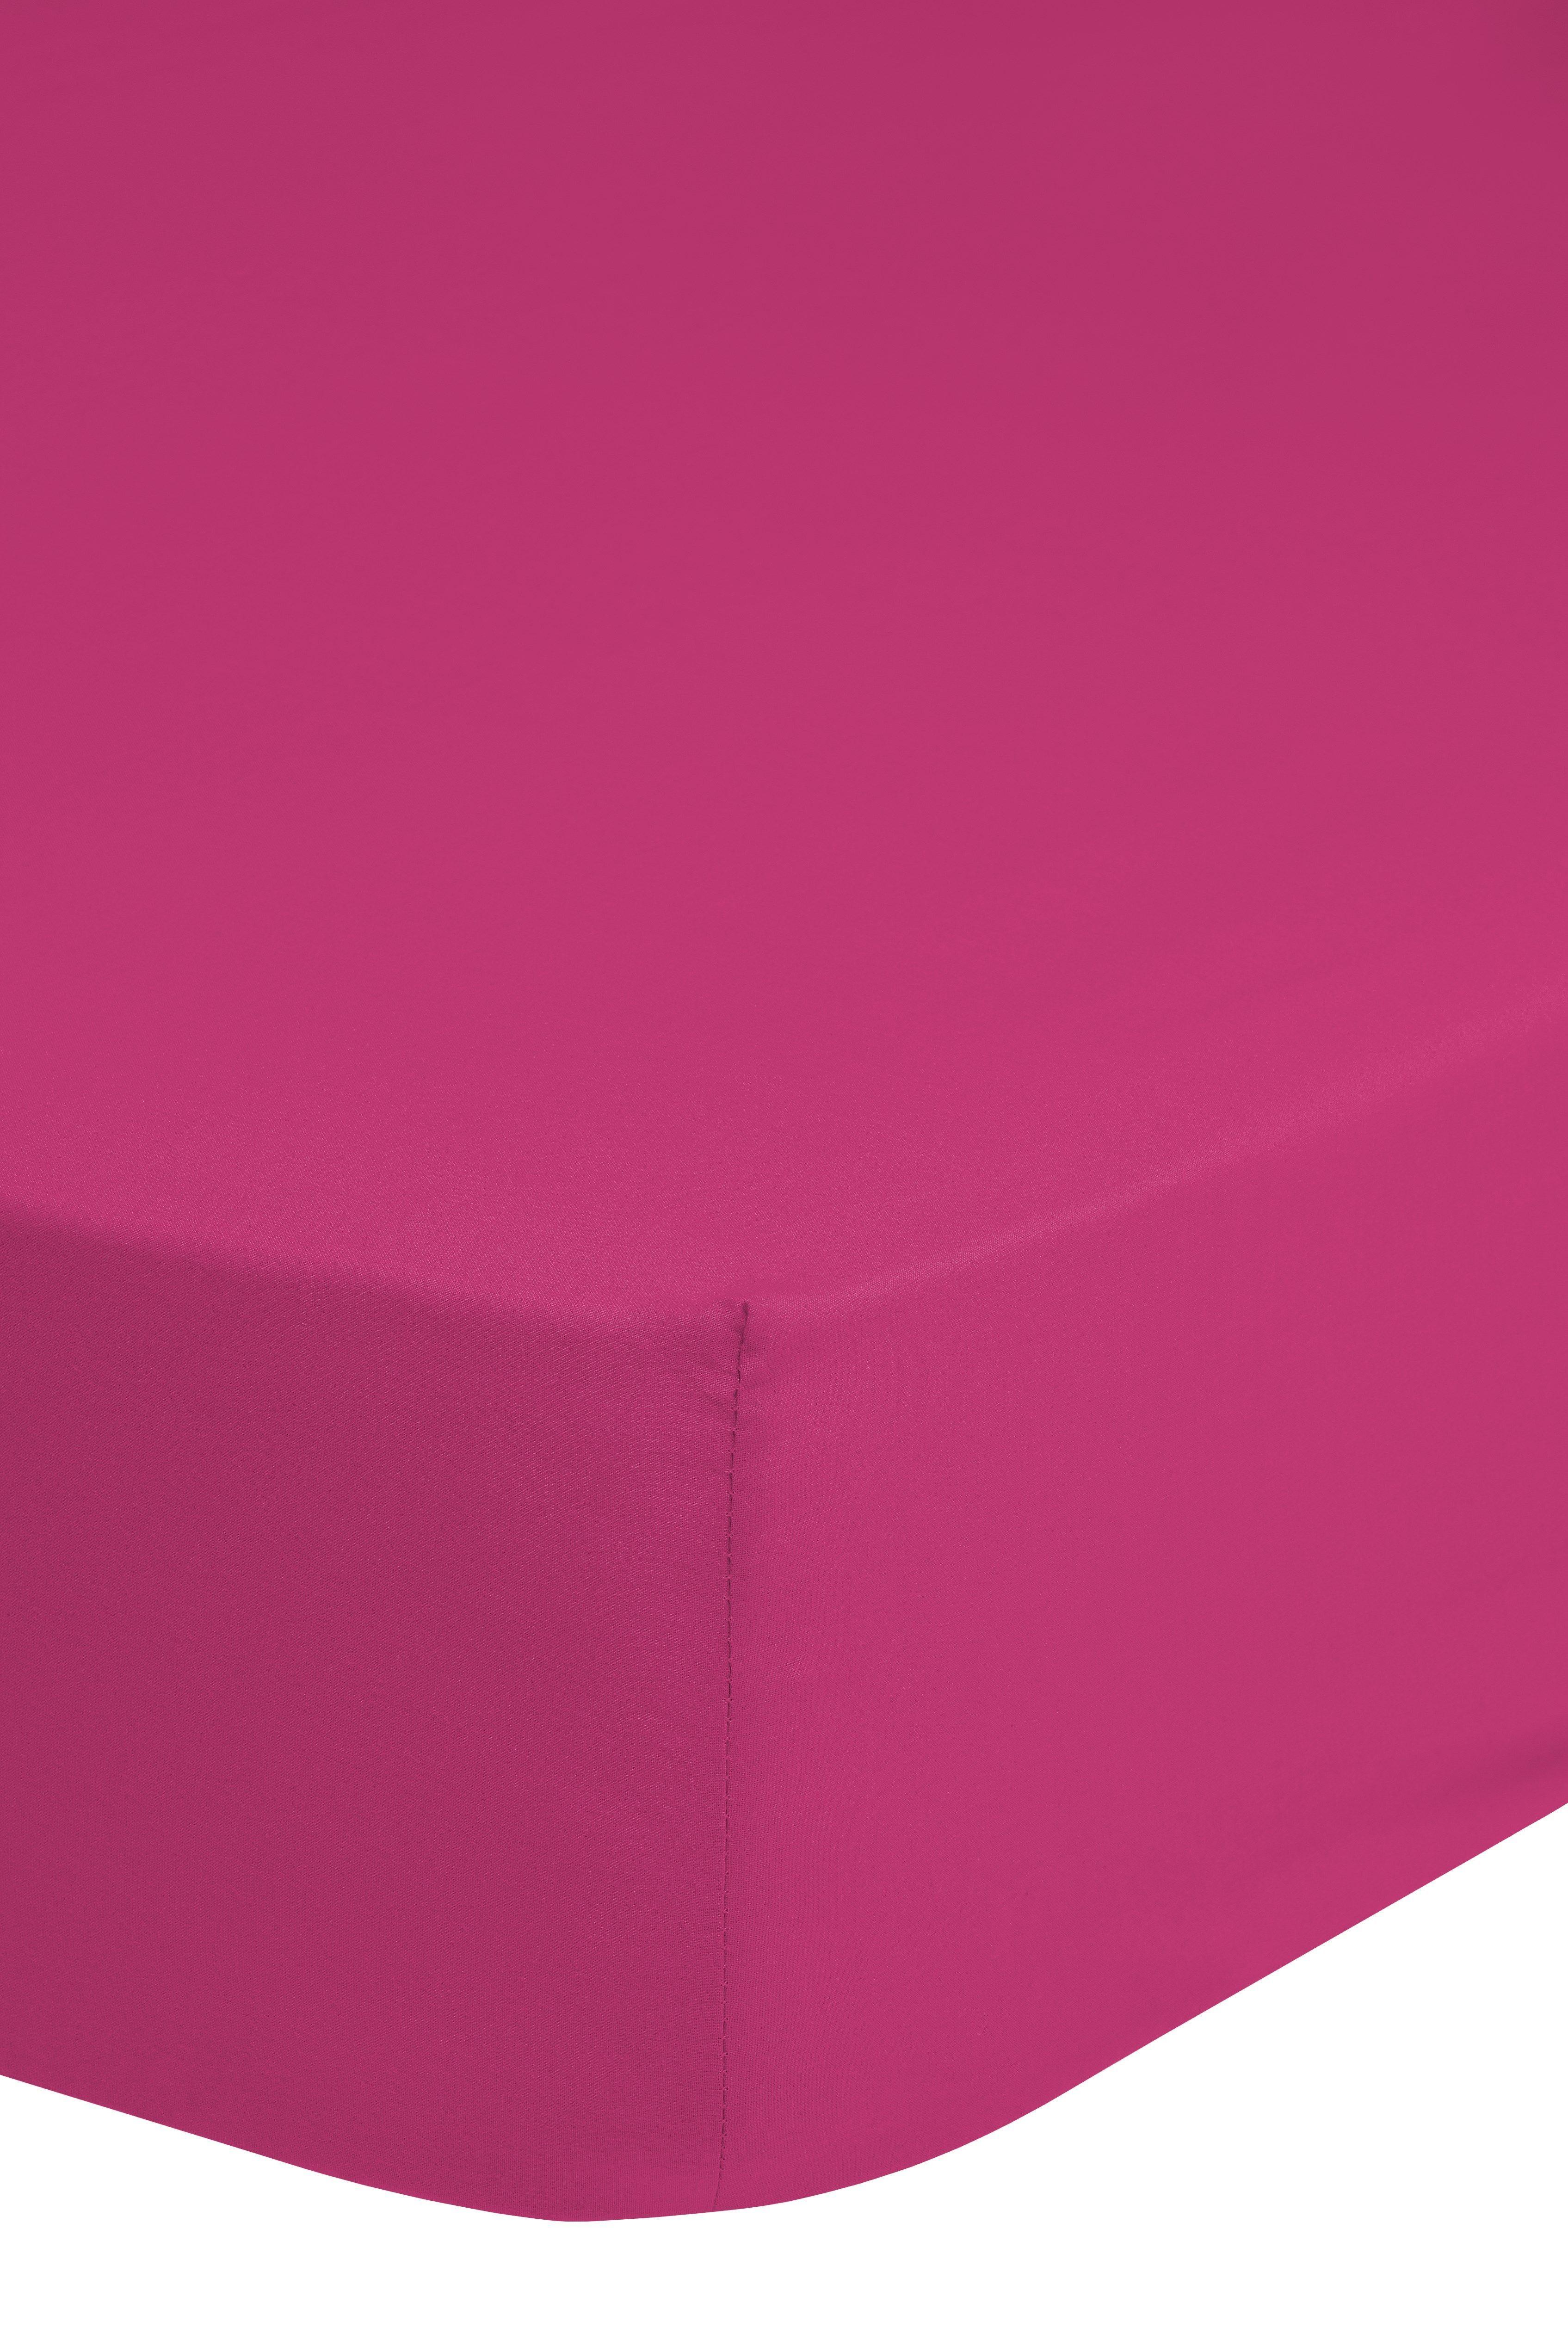 Elastické Prostěradlo Jersey Ca. 90-100x200cm - pink, Basics, textil (90-100/200cm) - MID.YOU